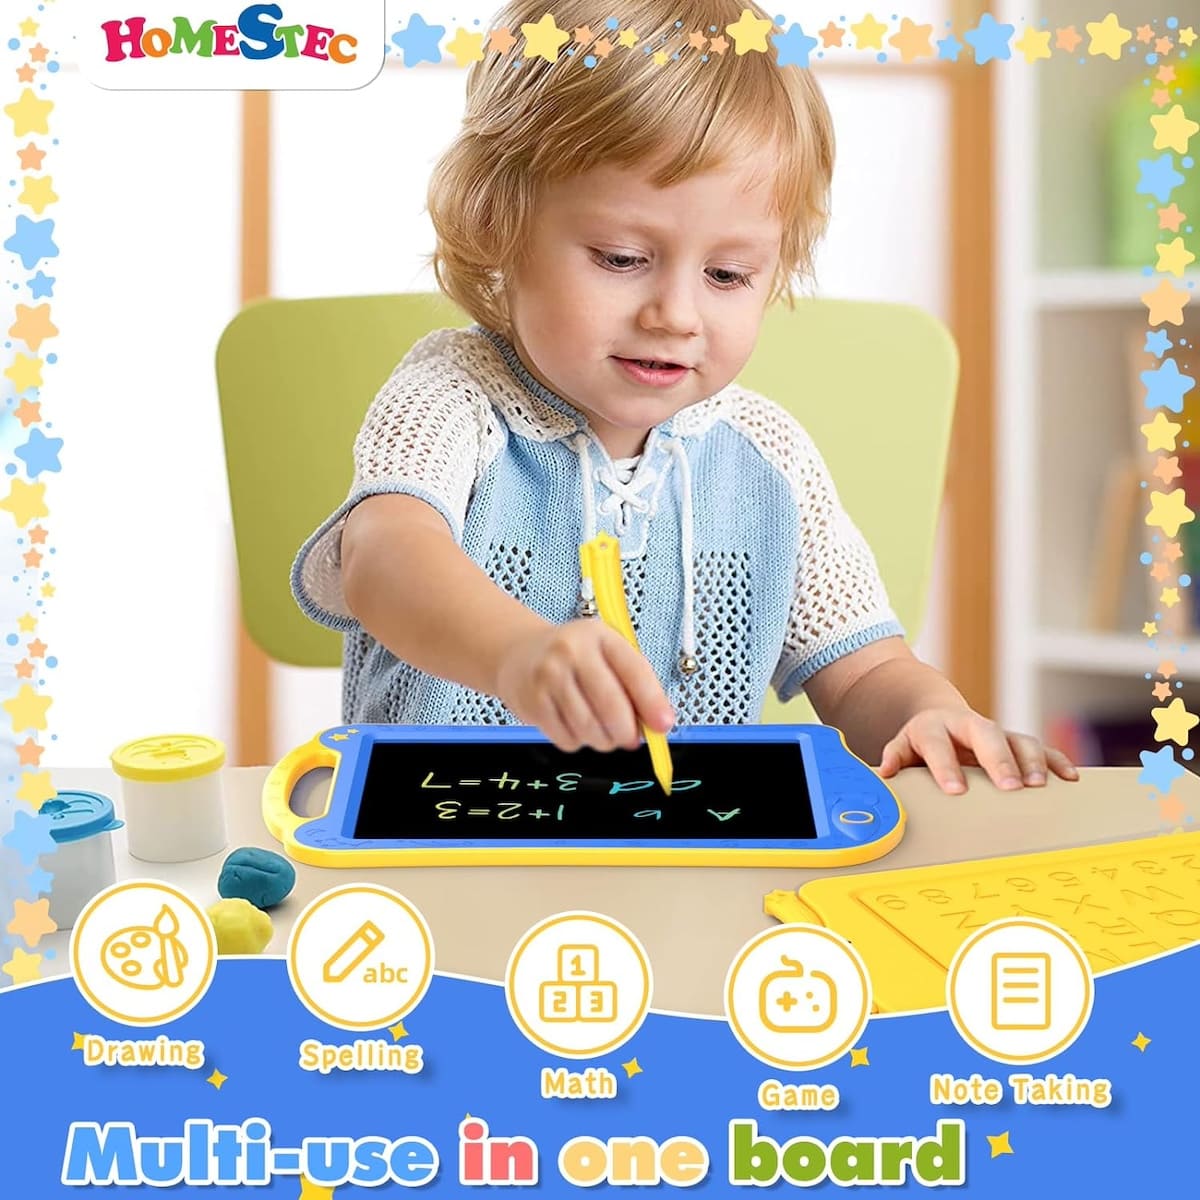 Tablet ajaib untuk menggambar dengan layar LCD untuk anak-anak